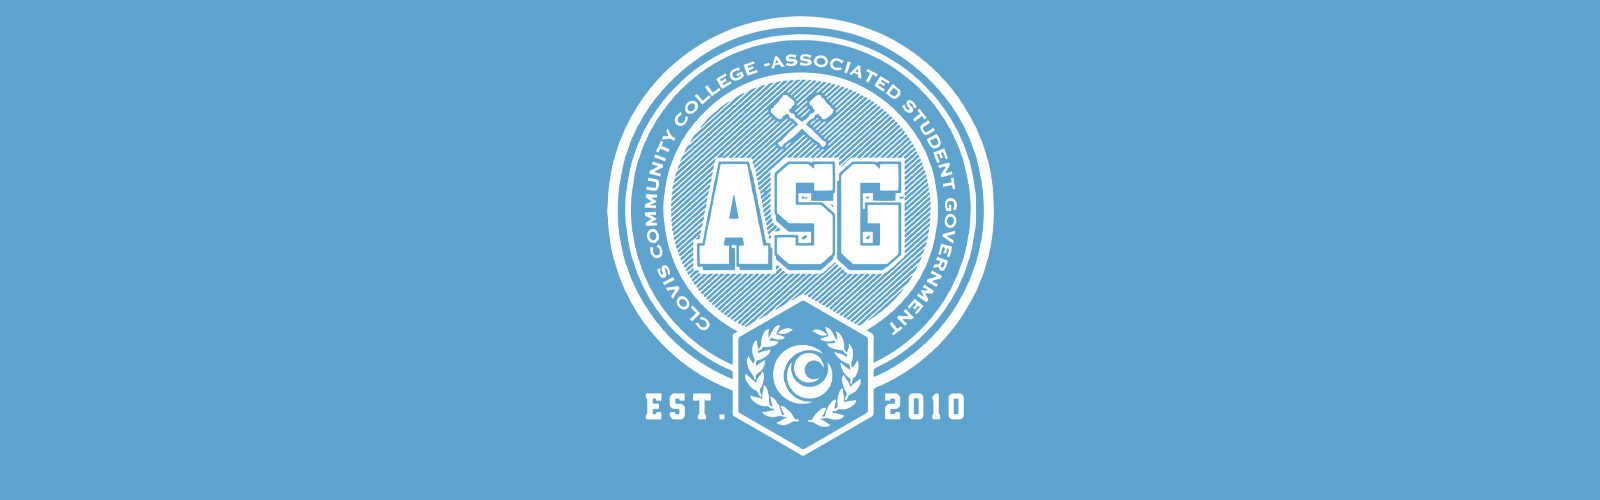 ASG Established in 2012